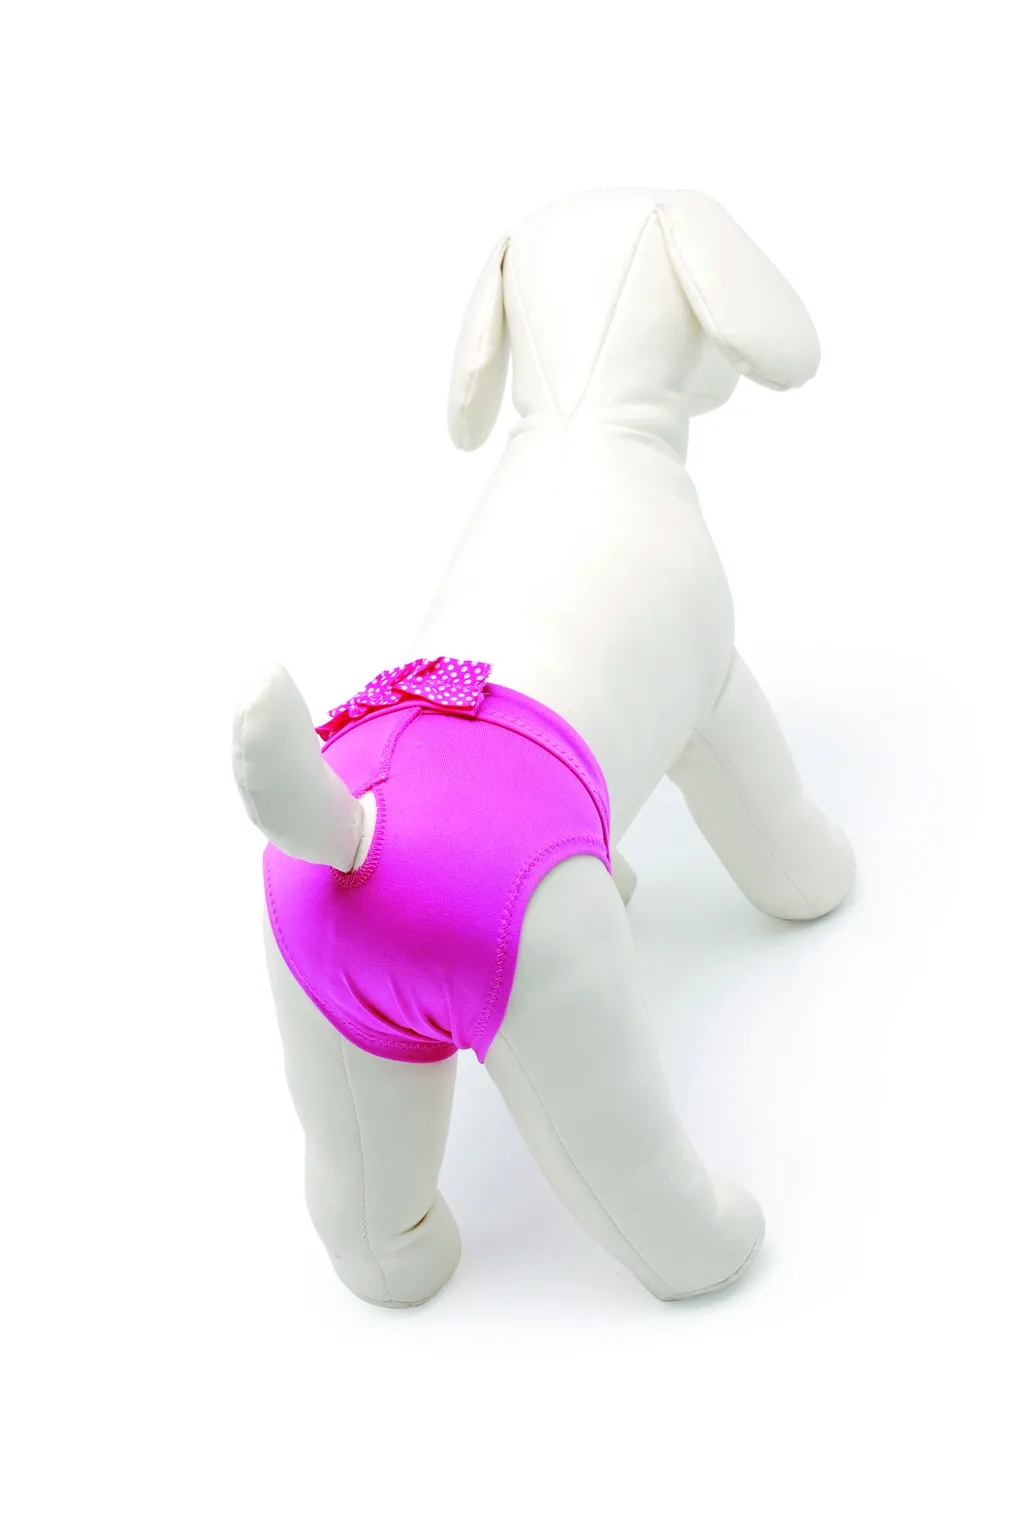 Camon Microfiber Dog Pants with Bow - бански/ хигиенни гащи за разгонени женски кучета, микрофибър розови 40 см. 2